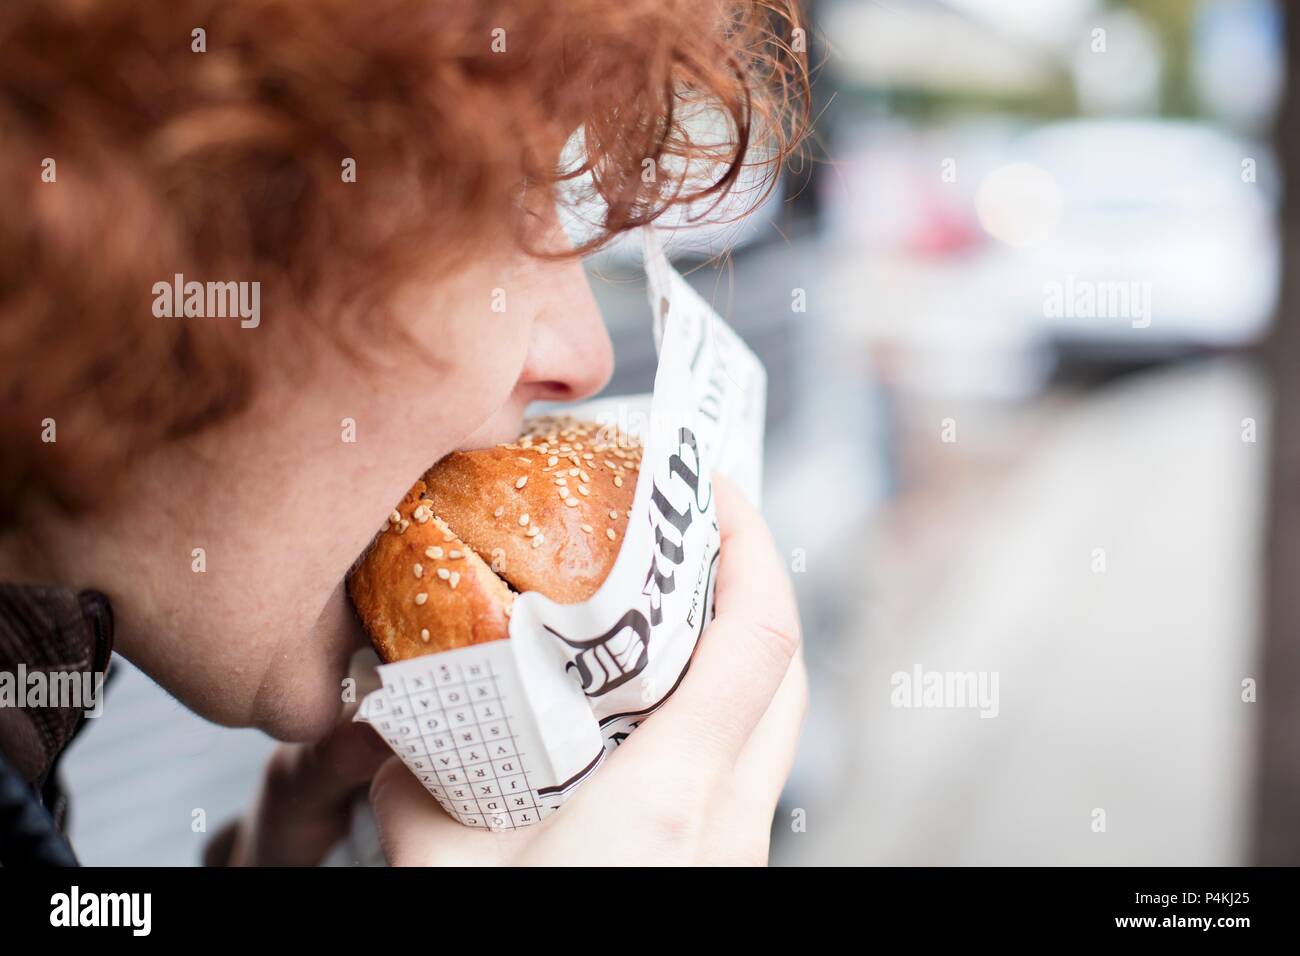 Un adolescent aux cheveux roux mordre dans un hamburger Banque D'Images